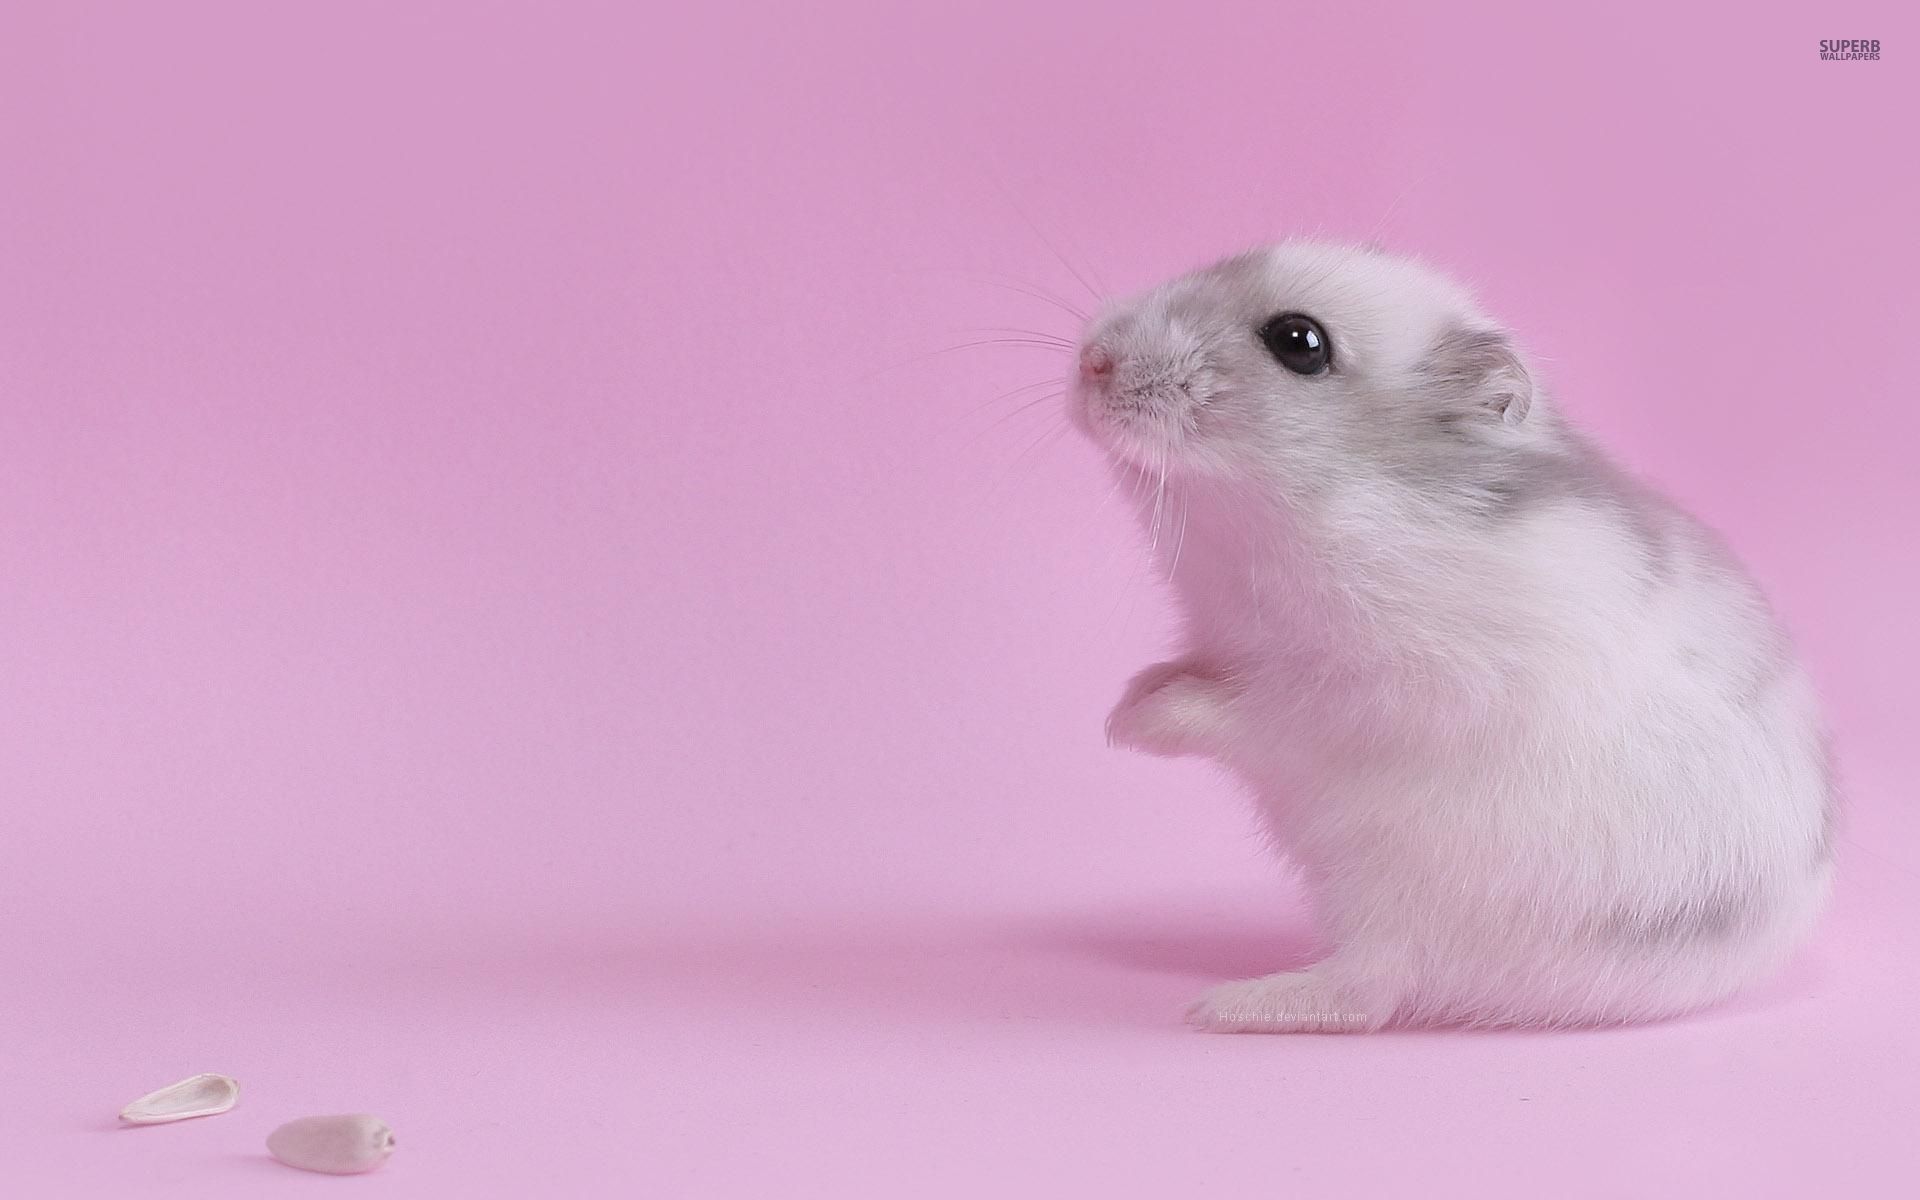 Cute hamster wallpaper - Animal wallpapers - #29471